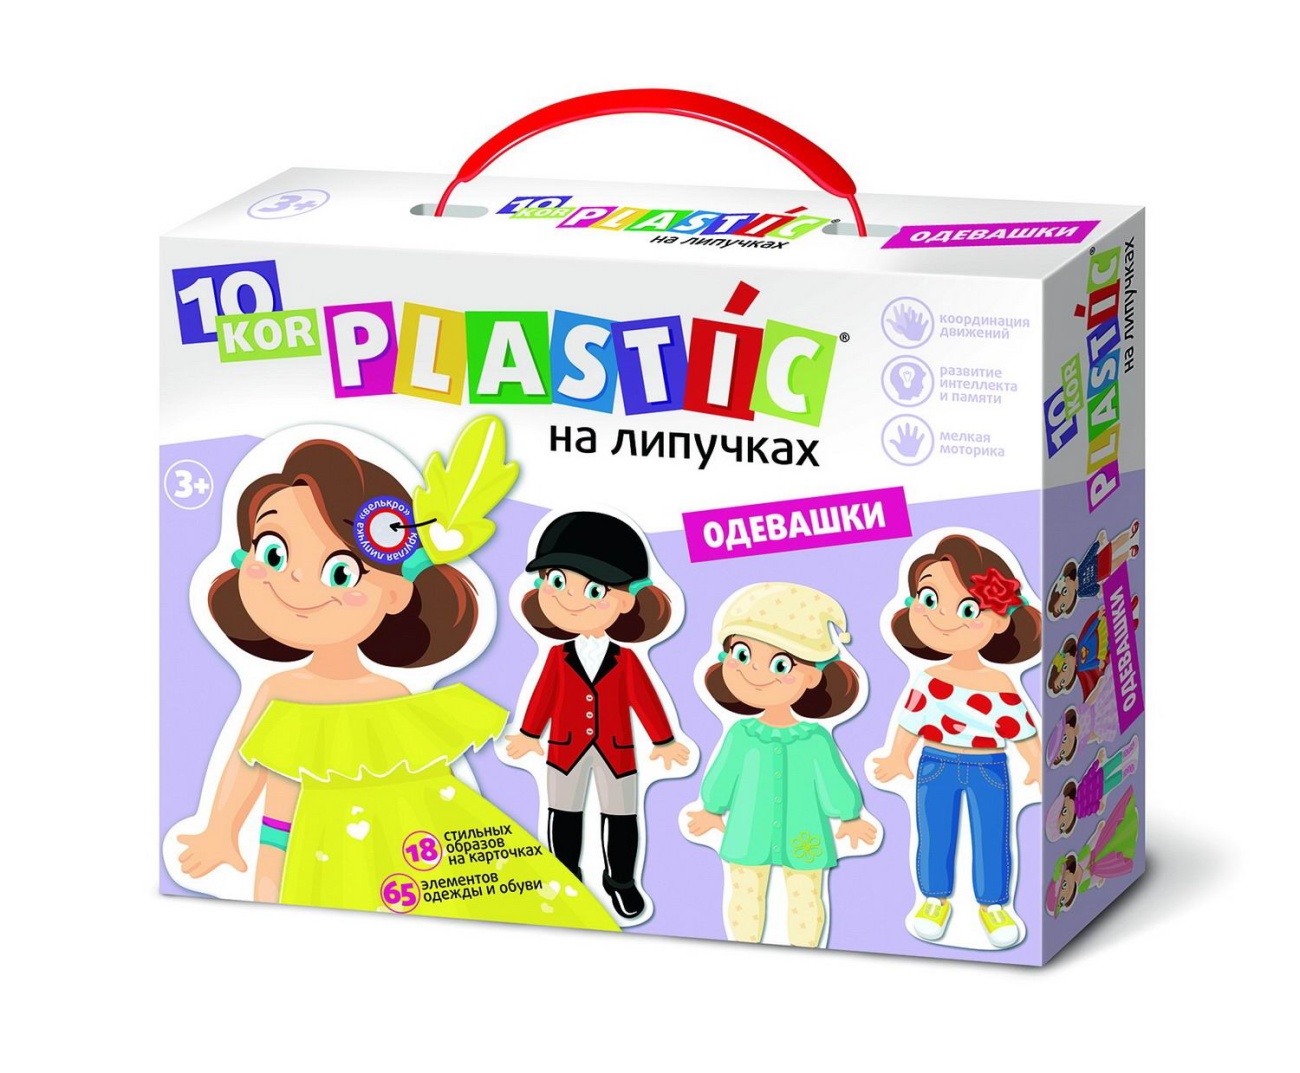 Развивающая игра Десятое королевство Пластик на липучках Одевашки 10KOR PLASTIC 04260ДК